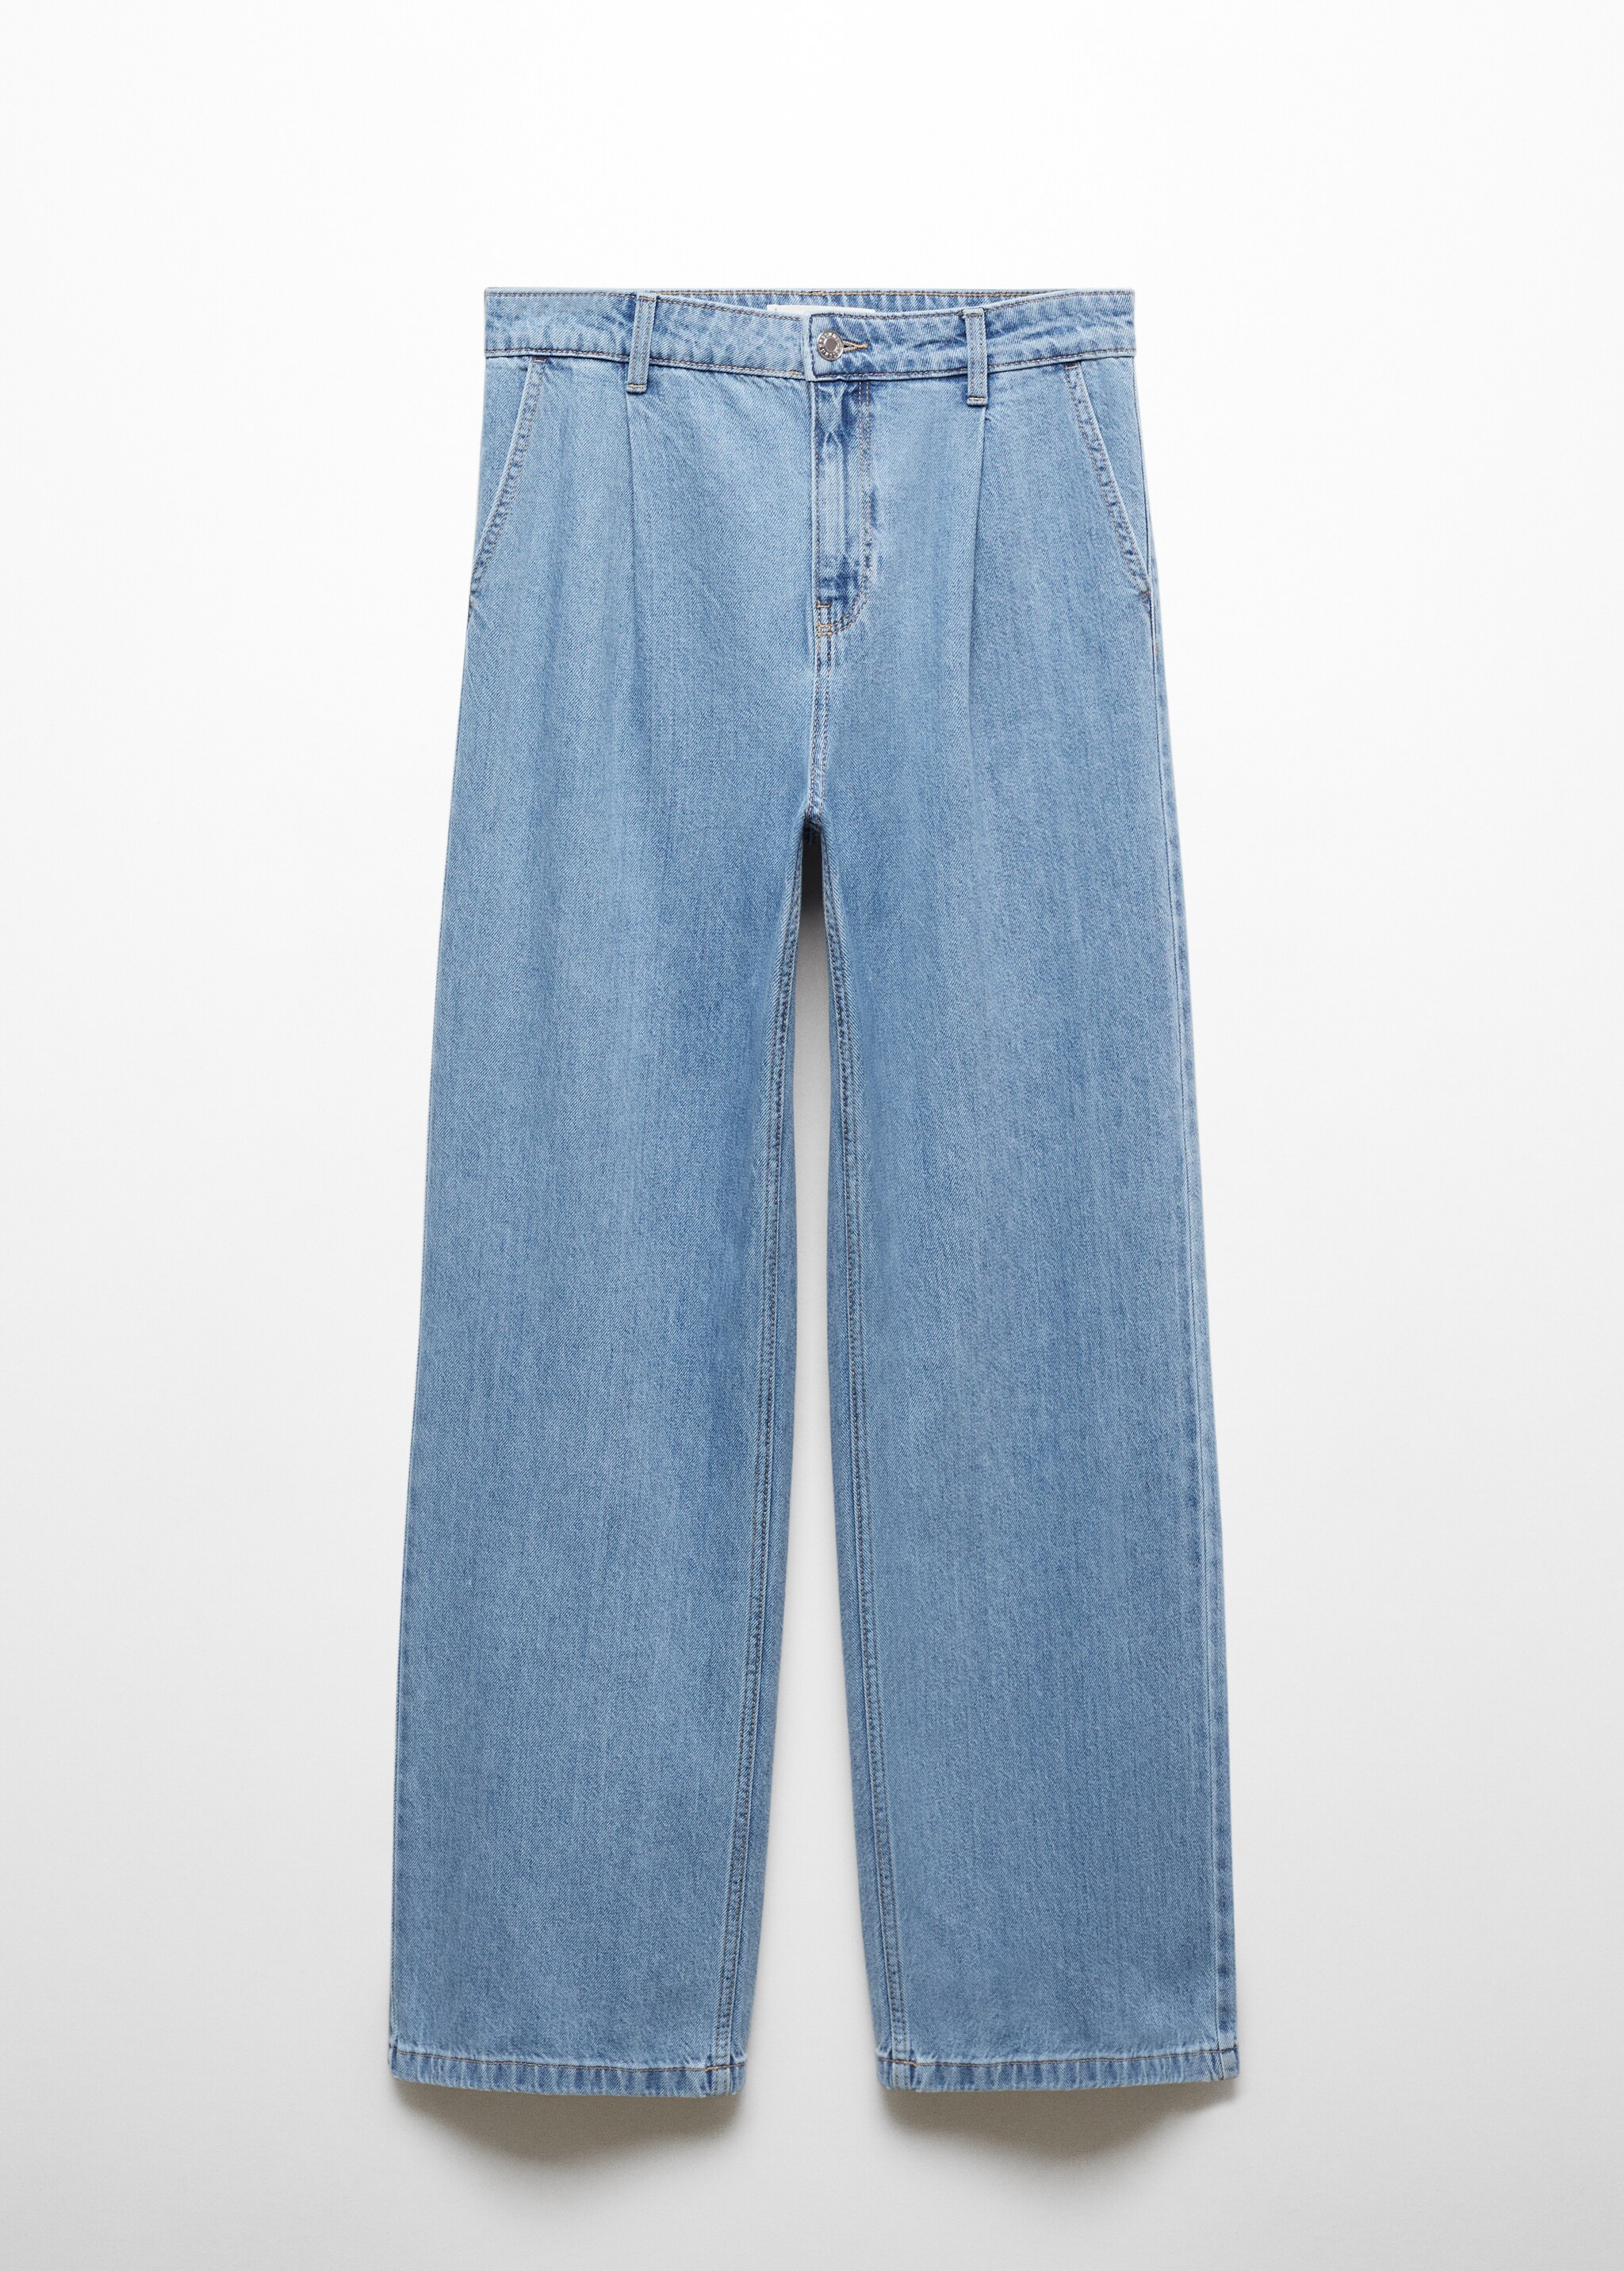 Jeans rectos pinzas - Artículo sin modelo